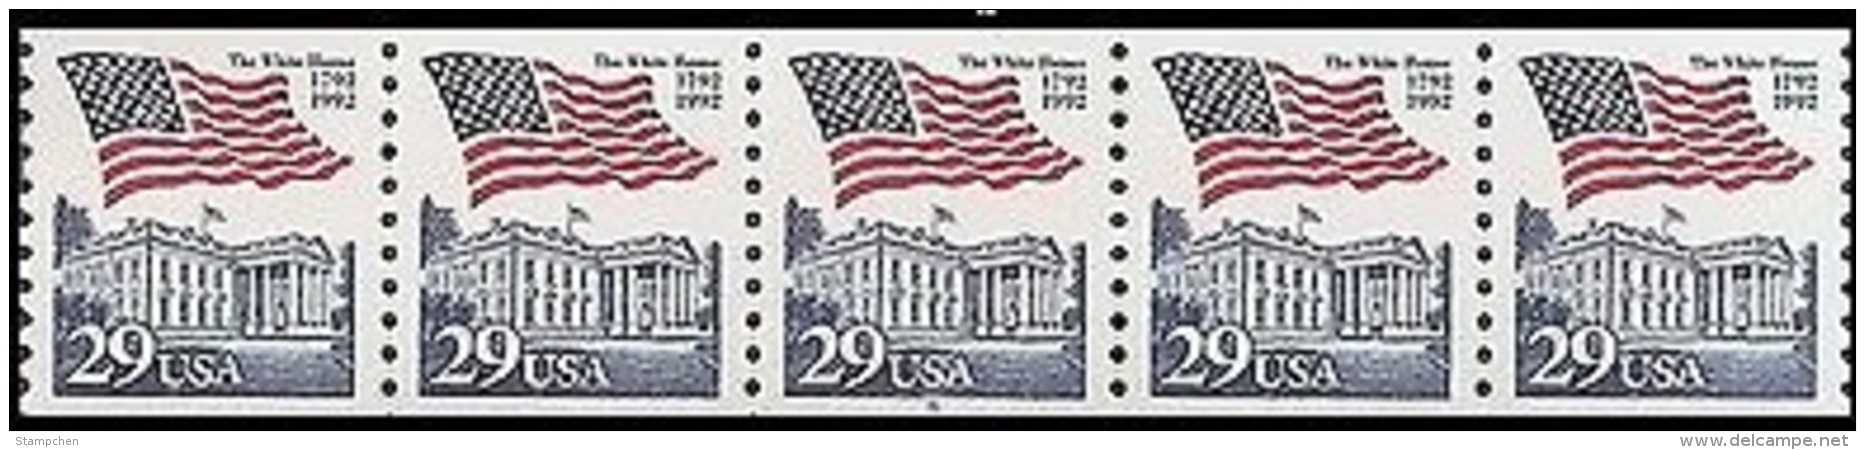 1992 USA Flag Over The White House PNC5 Plate Number Coil Strip PI #7 Sc#2609 Post - Ruedecillas (Números De Placas)